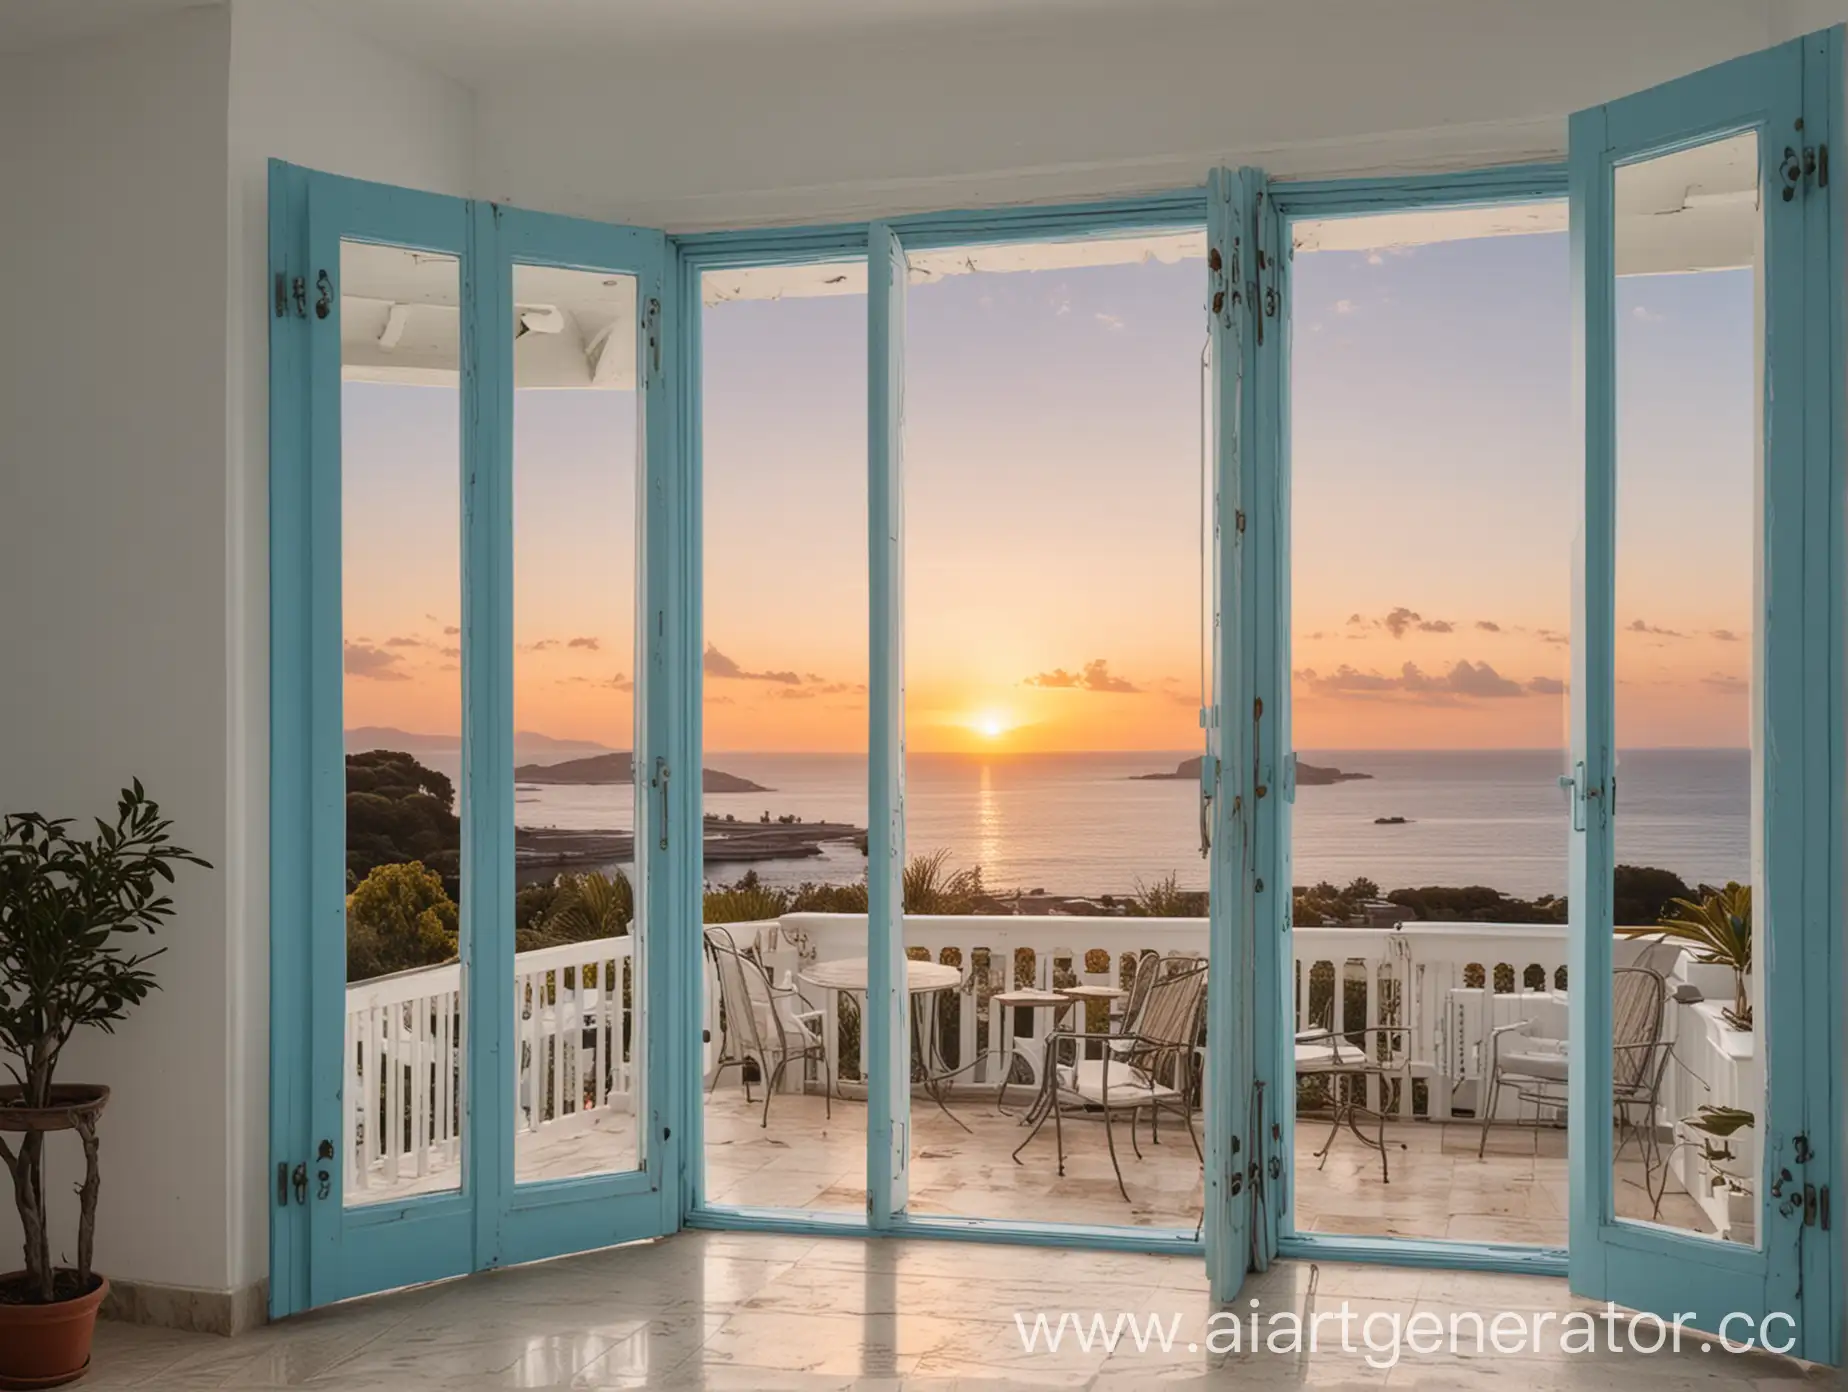 Белый дом голубые ставни с понорамным окном с видом на море с красивой верандой с закатом